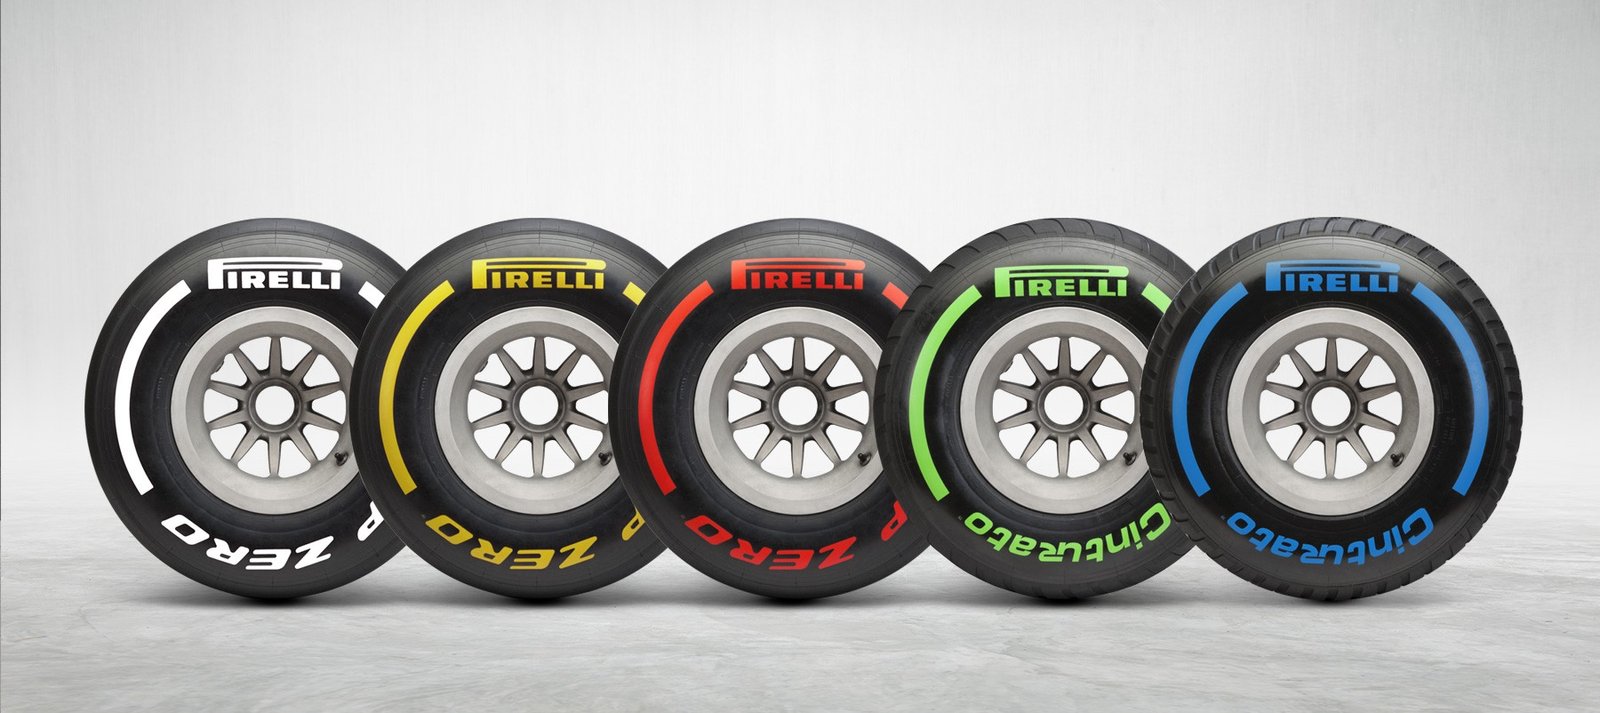 Foto de O que há de novo nos pneus Pirelli para a Temporada 2019 de Fórmula 1?